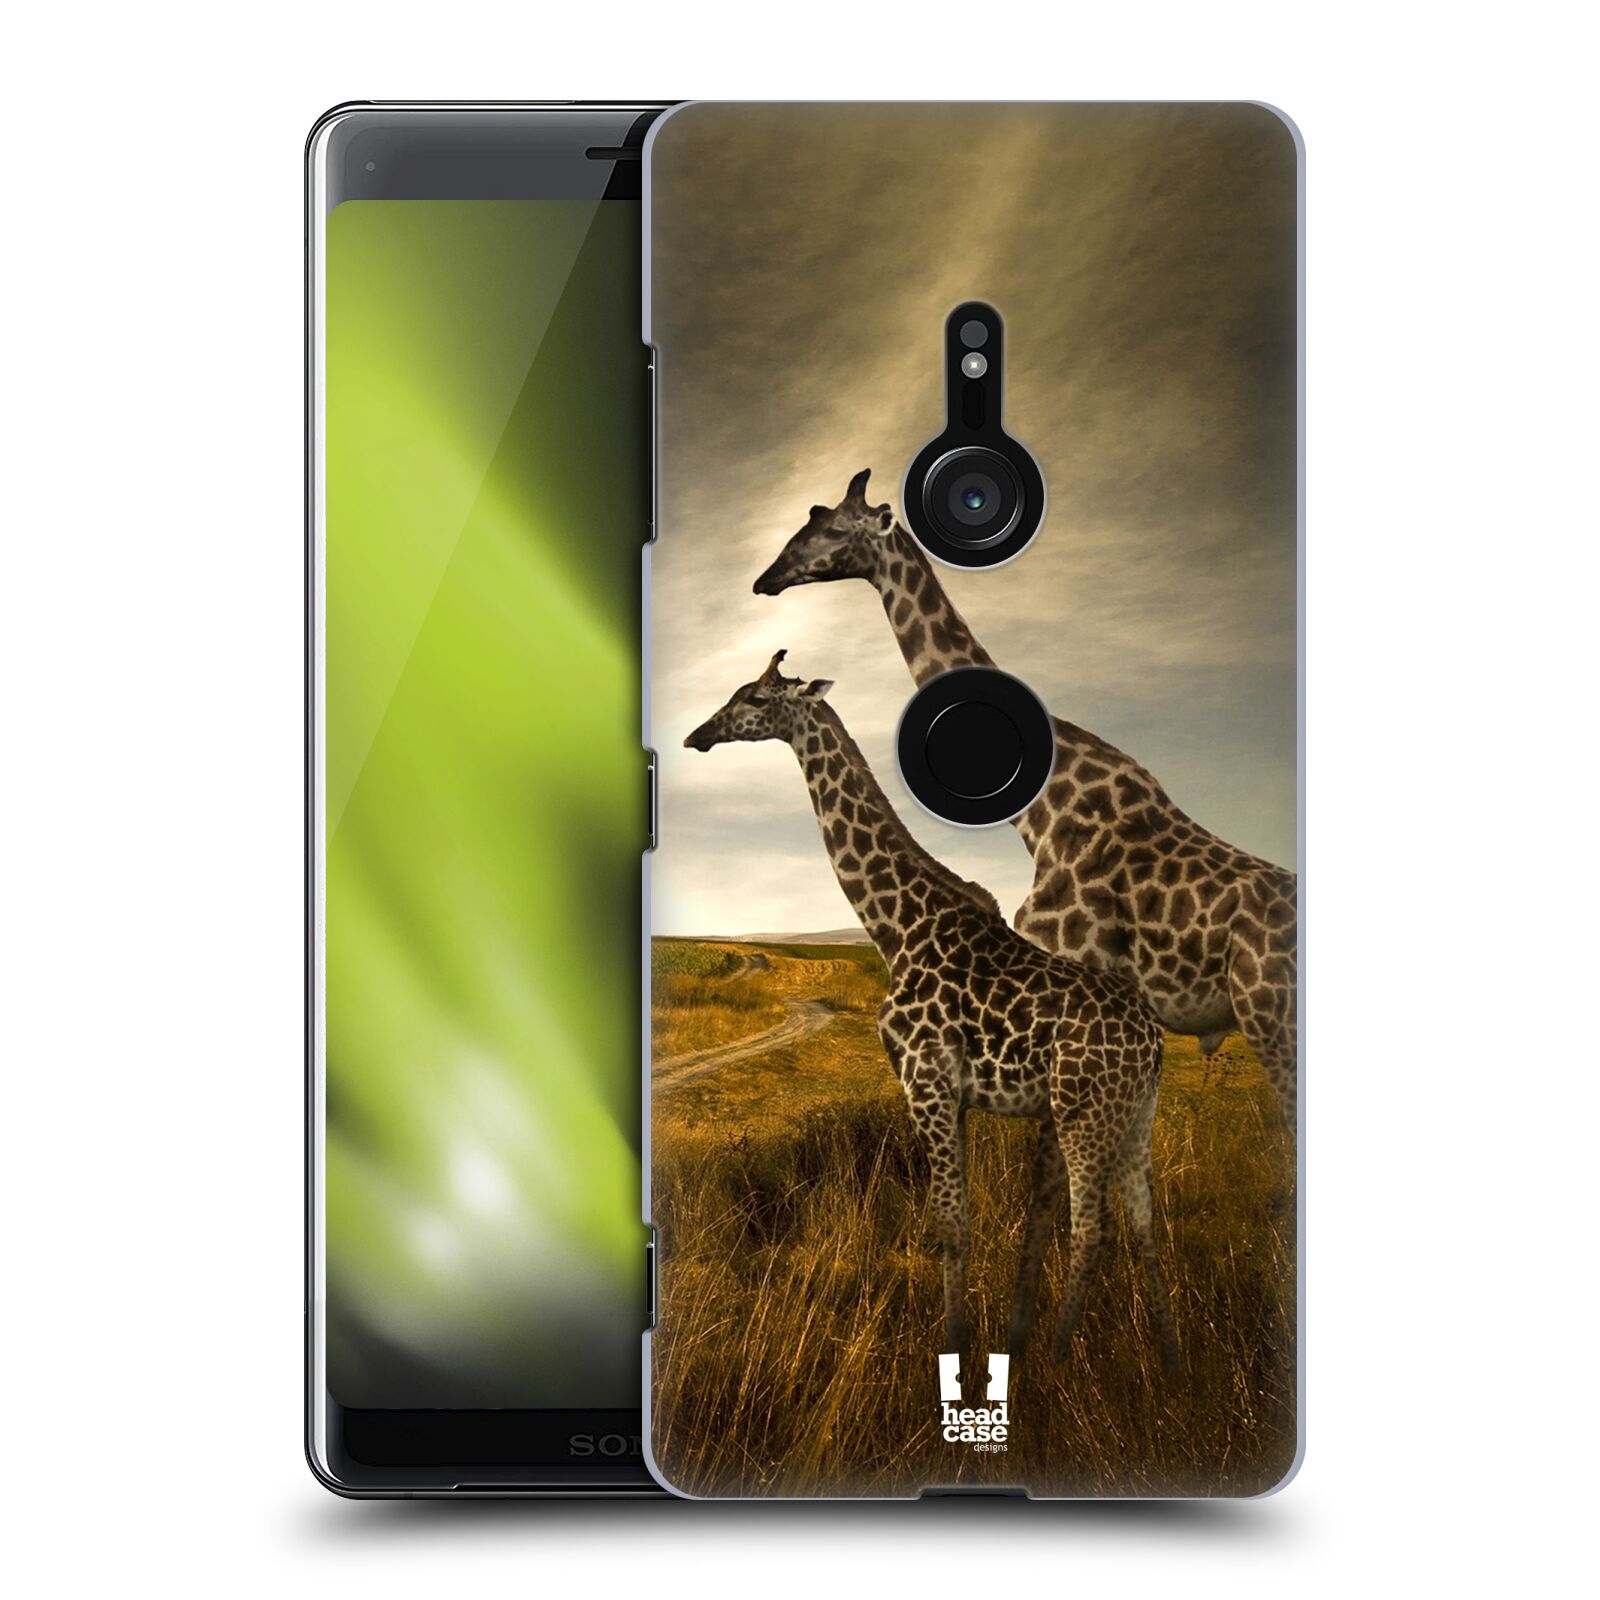 Zadní obal pro mobil Sony Xperia XZ3 - HEAD CASE - Svět zvířat žirafy